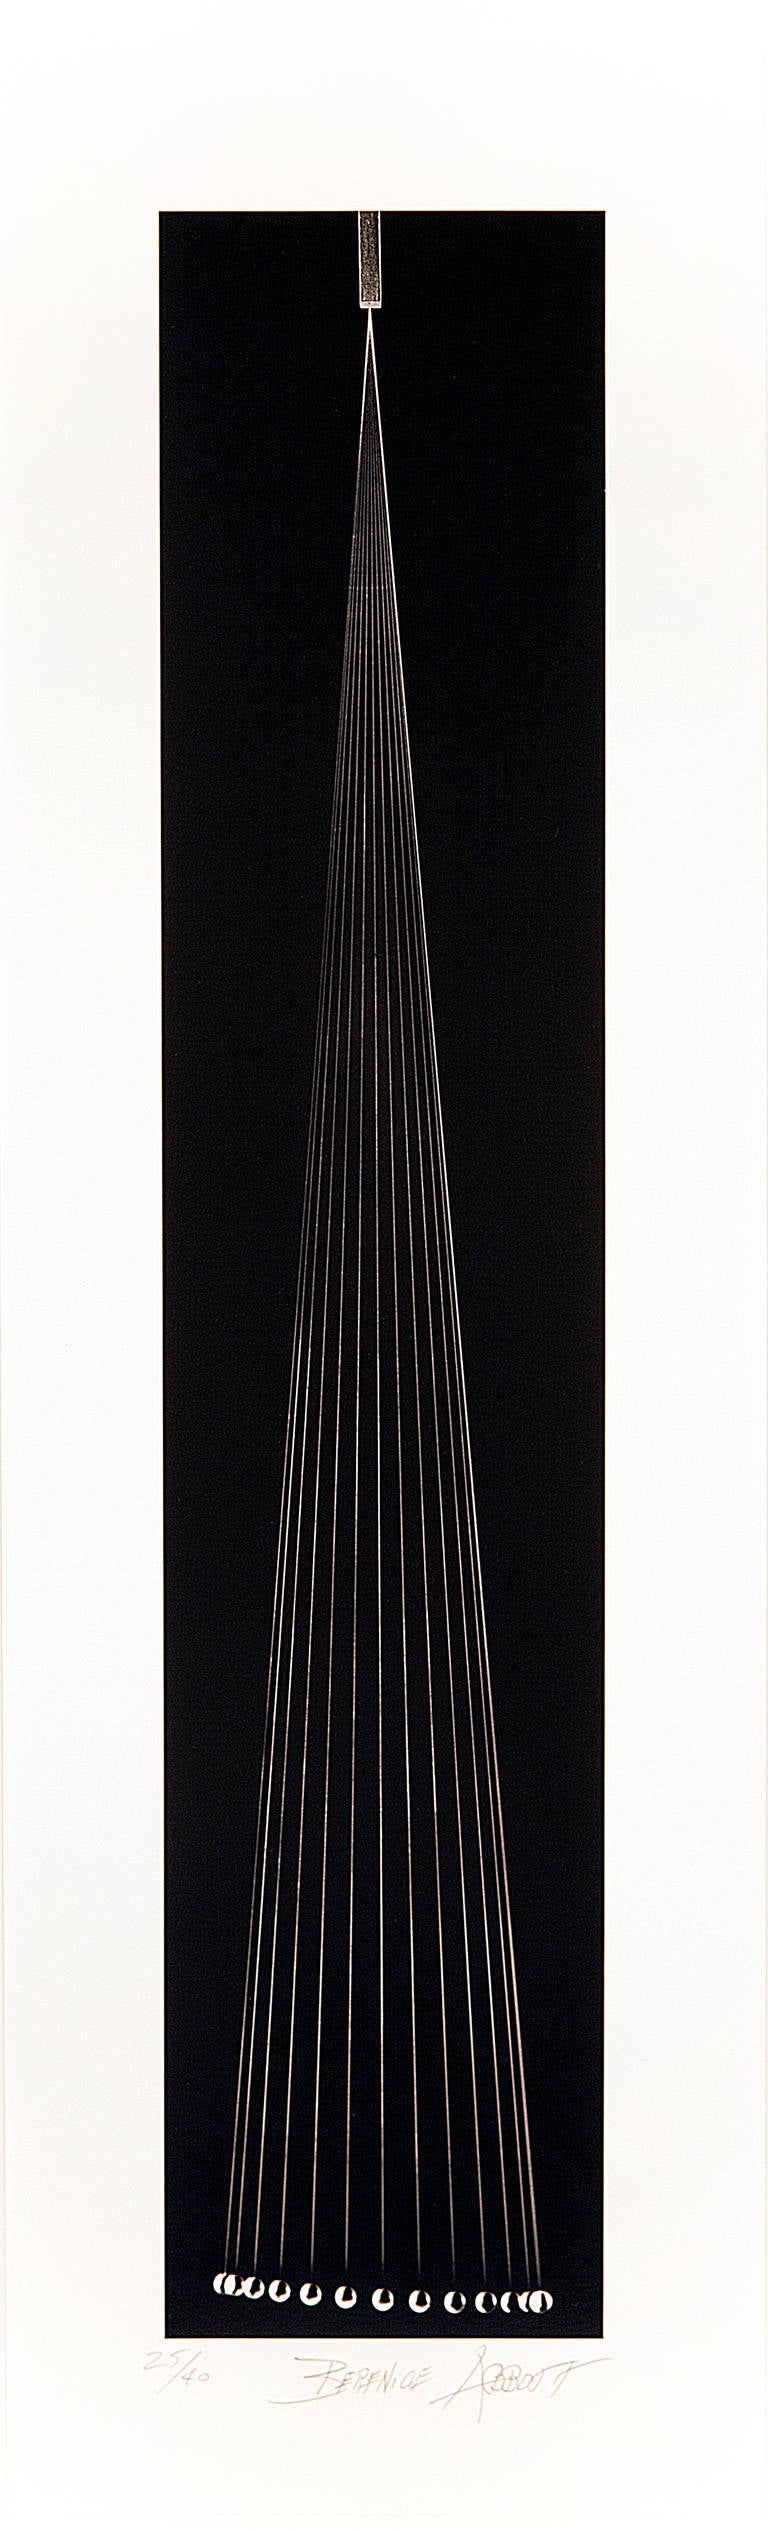 Berenice Abbott Black and White Photograph - The Pendulum